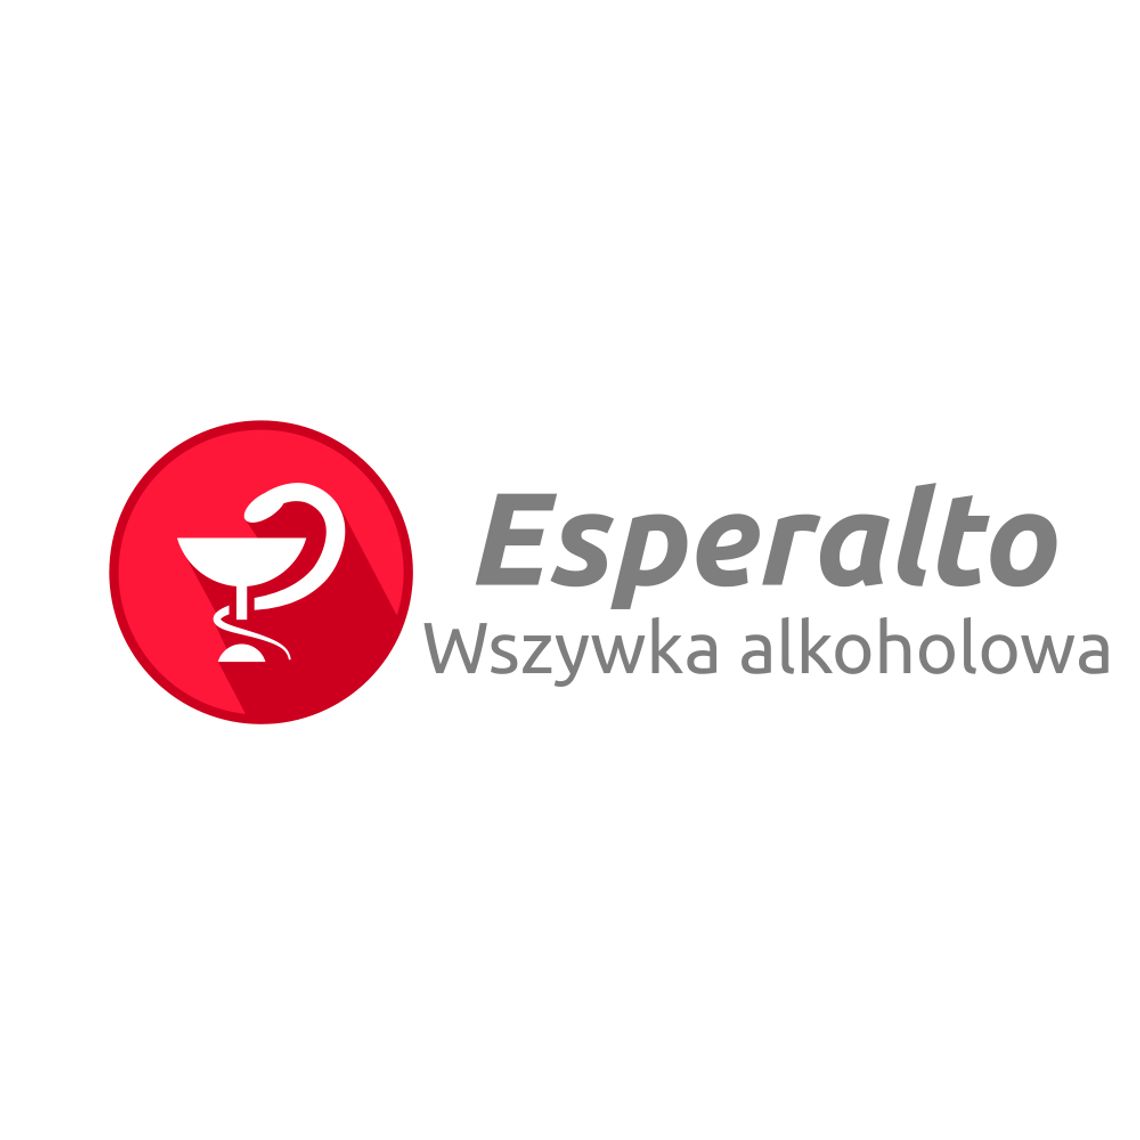 Esperalto - Wszywka alkoholowa Poznań